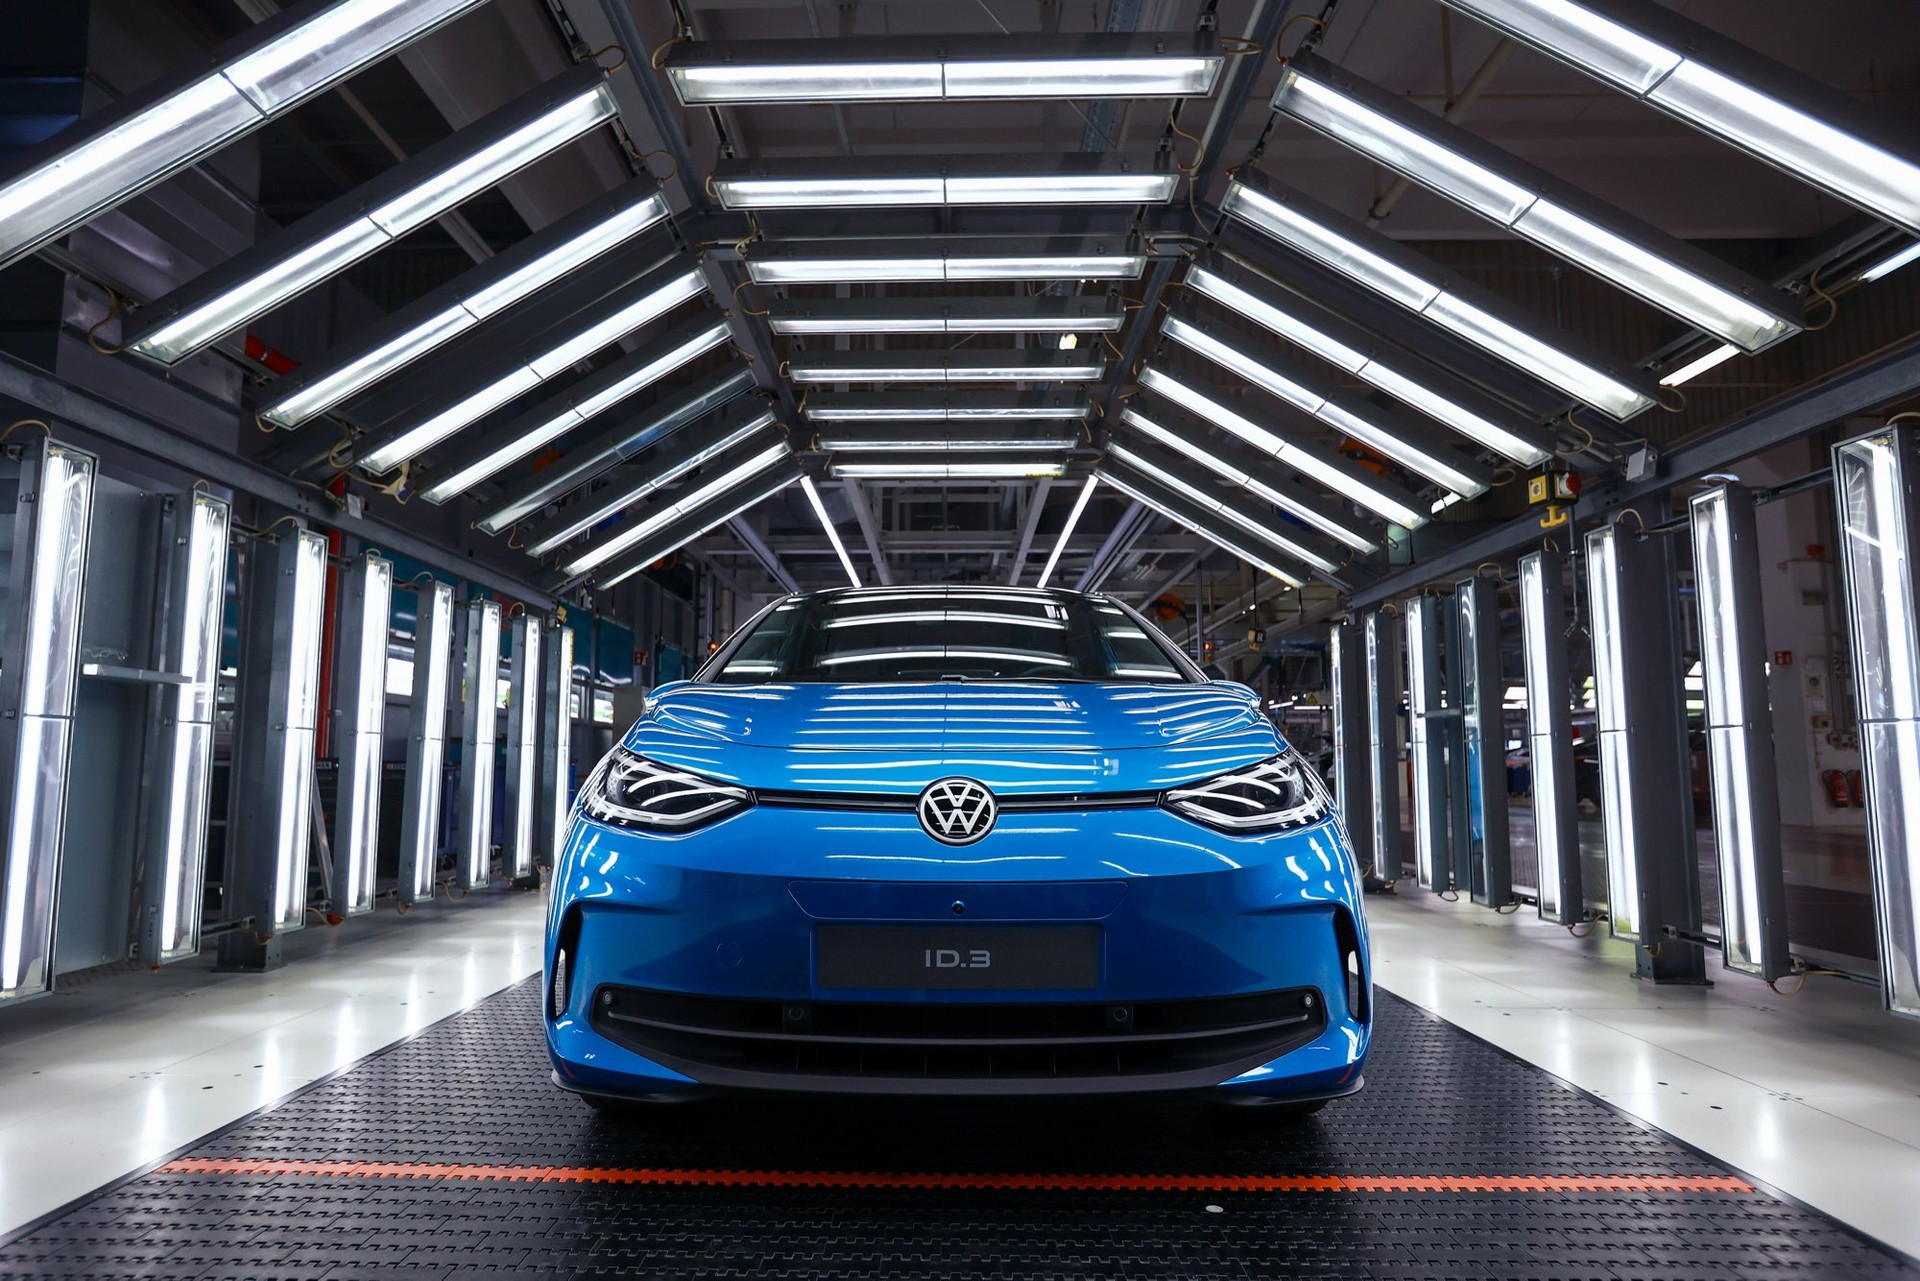 Volkswagen - Niềm tự hào của nước Đức bên bờ vực thẳm, nguy cơ trở thành nhà sản xuất theo hợp đồng, lắp xe cho hãng khác - Ảnh 3.